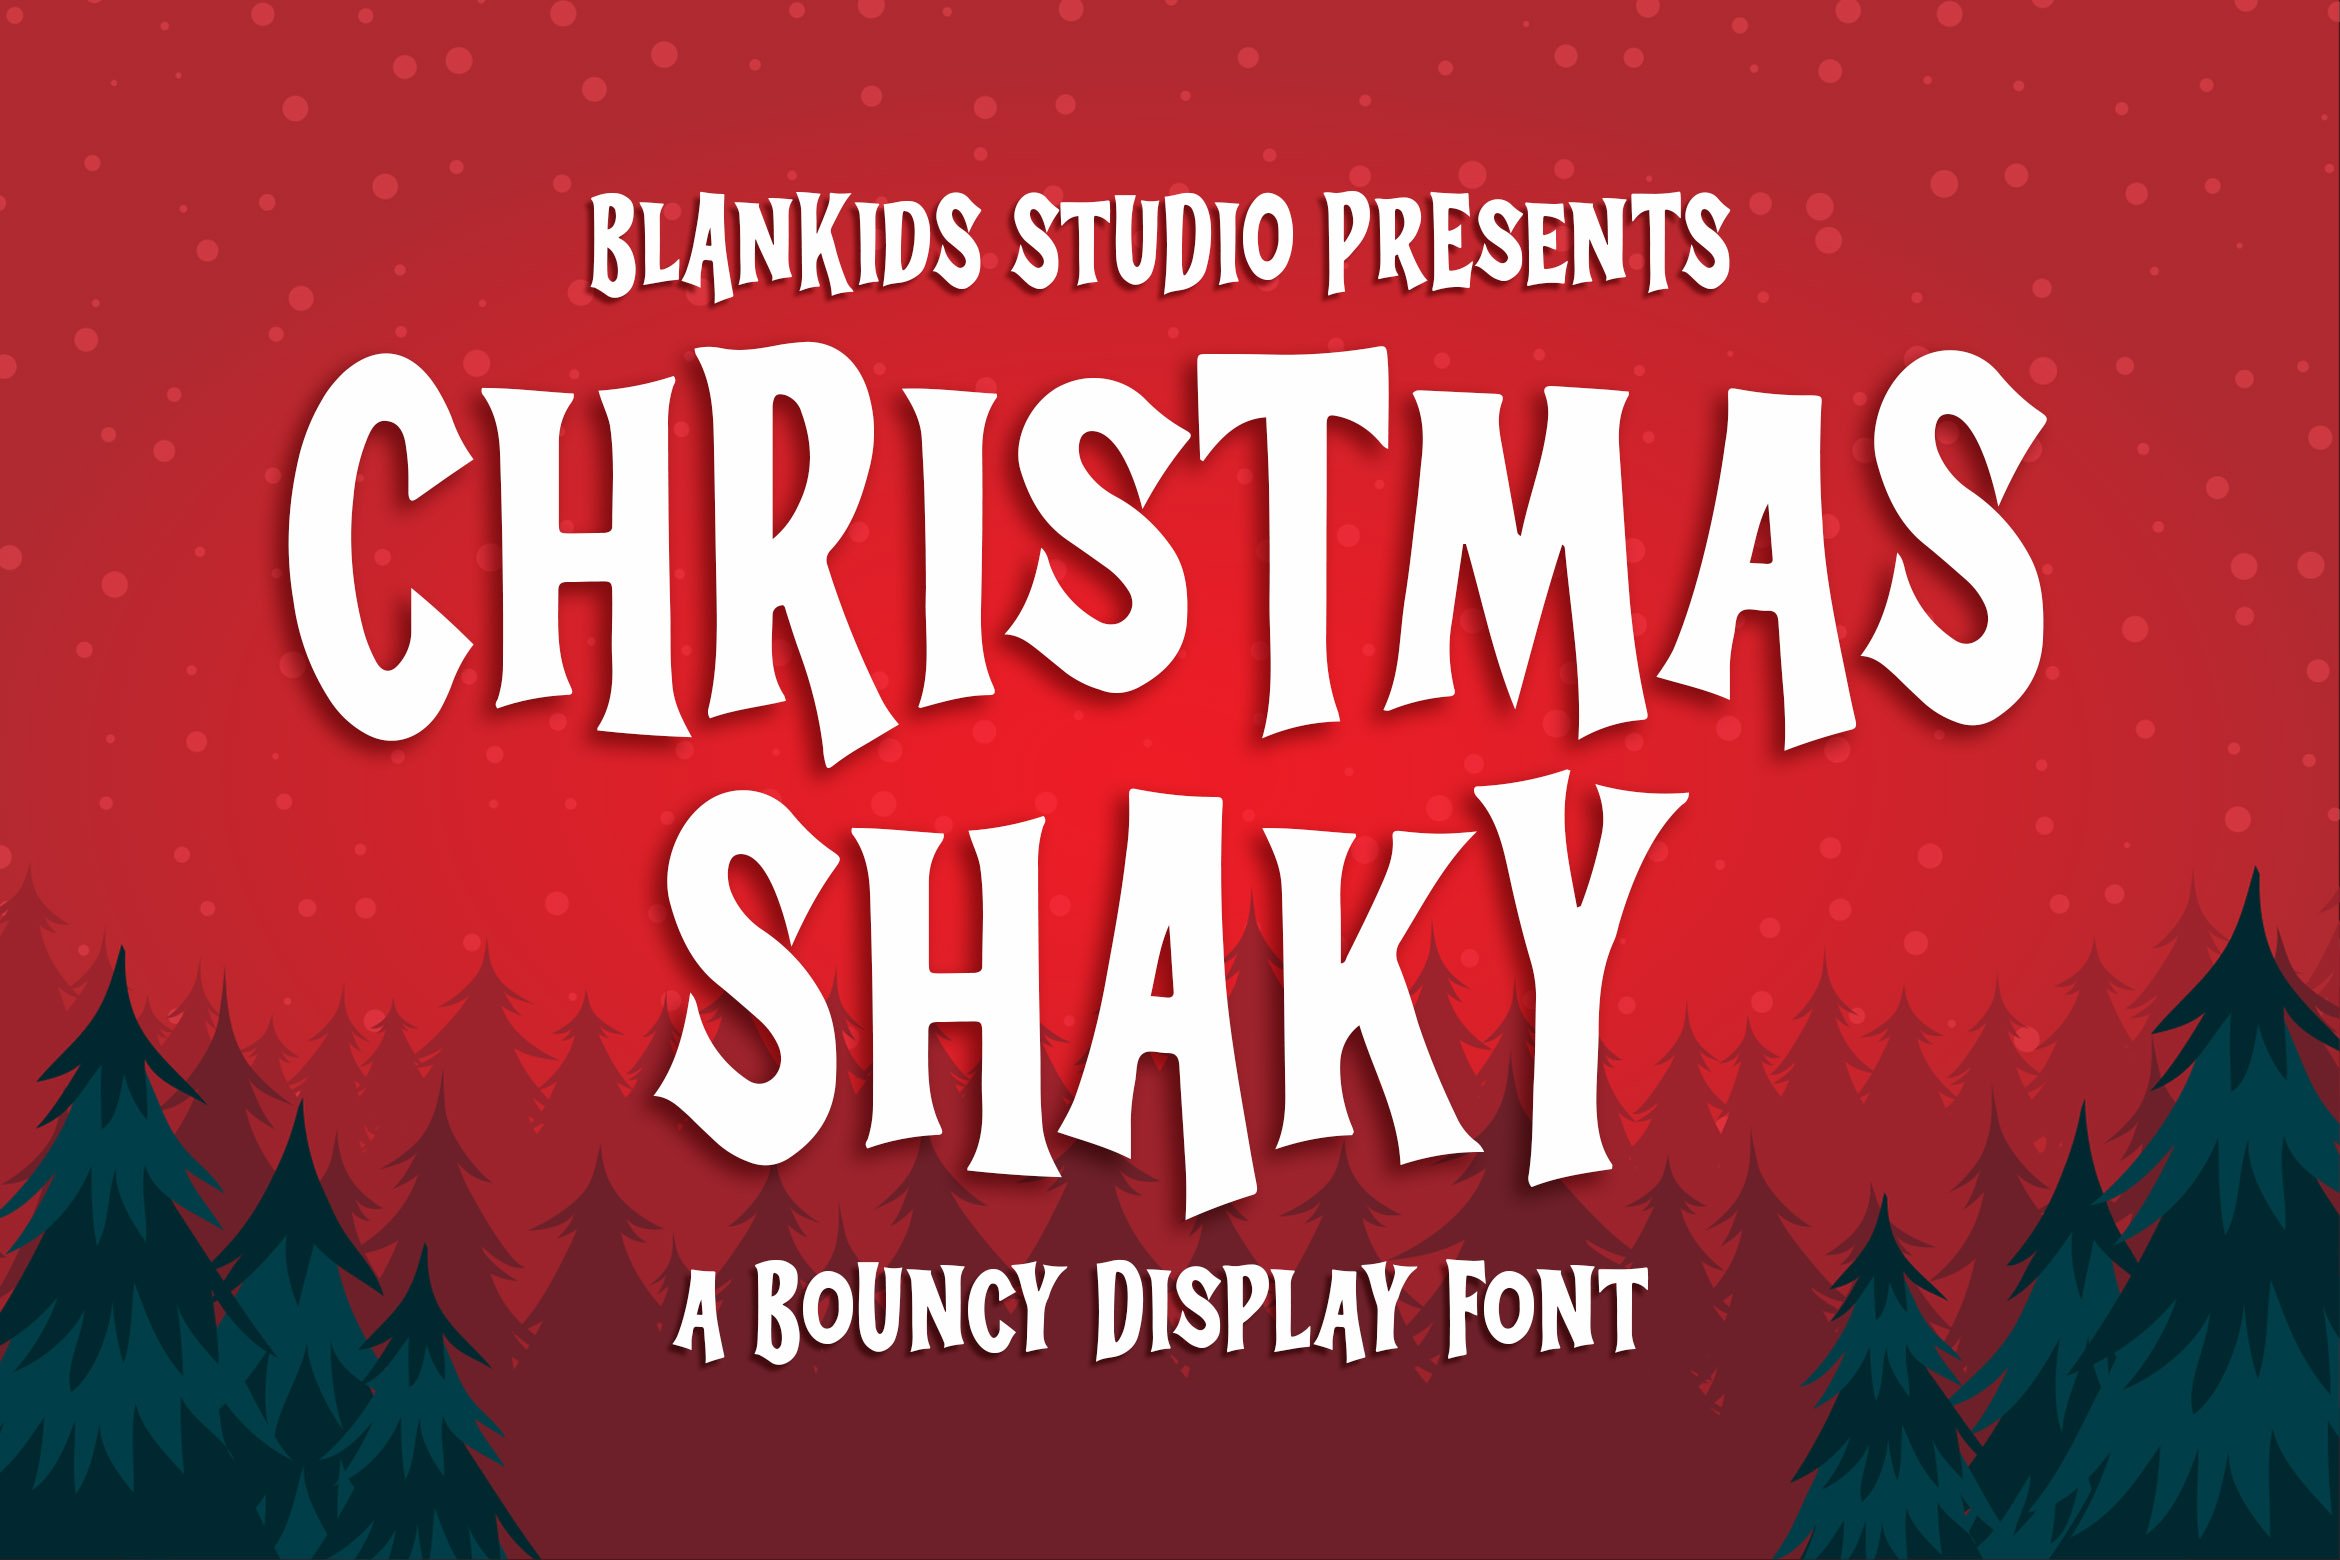 Christmas Shaky a Bouncy Display Fo cover image.